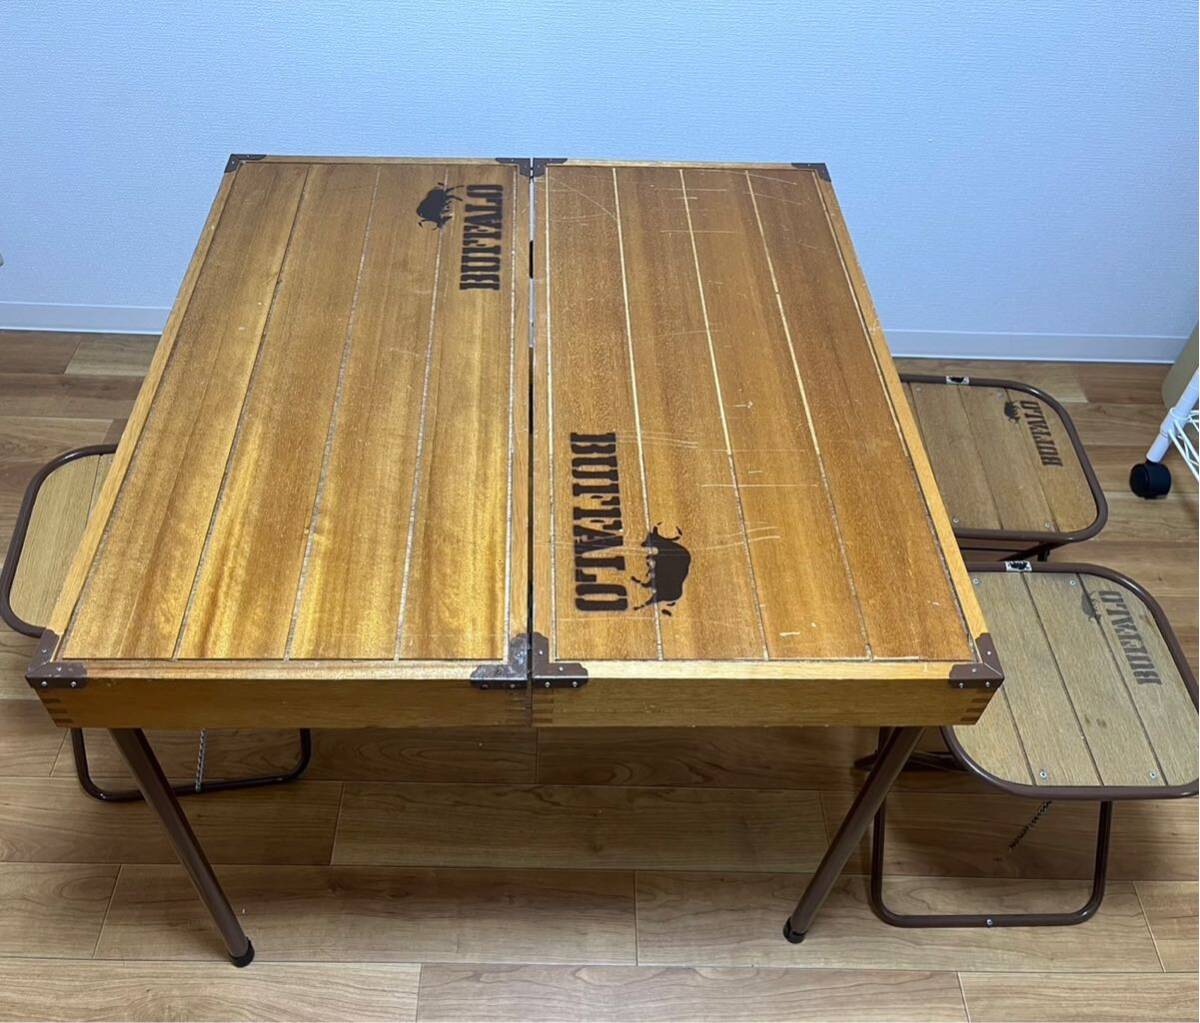 TA-667☆140サイズ☆ テーブルチェアセット BUFFALO バッファロー 折り畳み式 キャンプ用品 アウトドア 木製 レトロ アンティーク 3脚の画像1